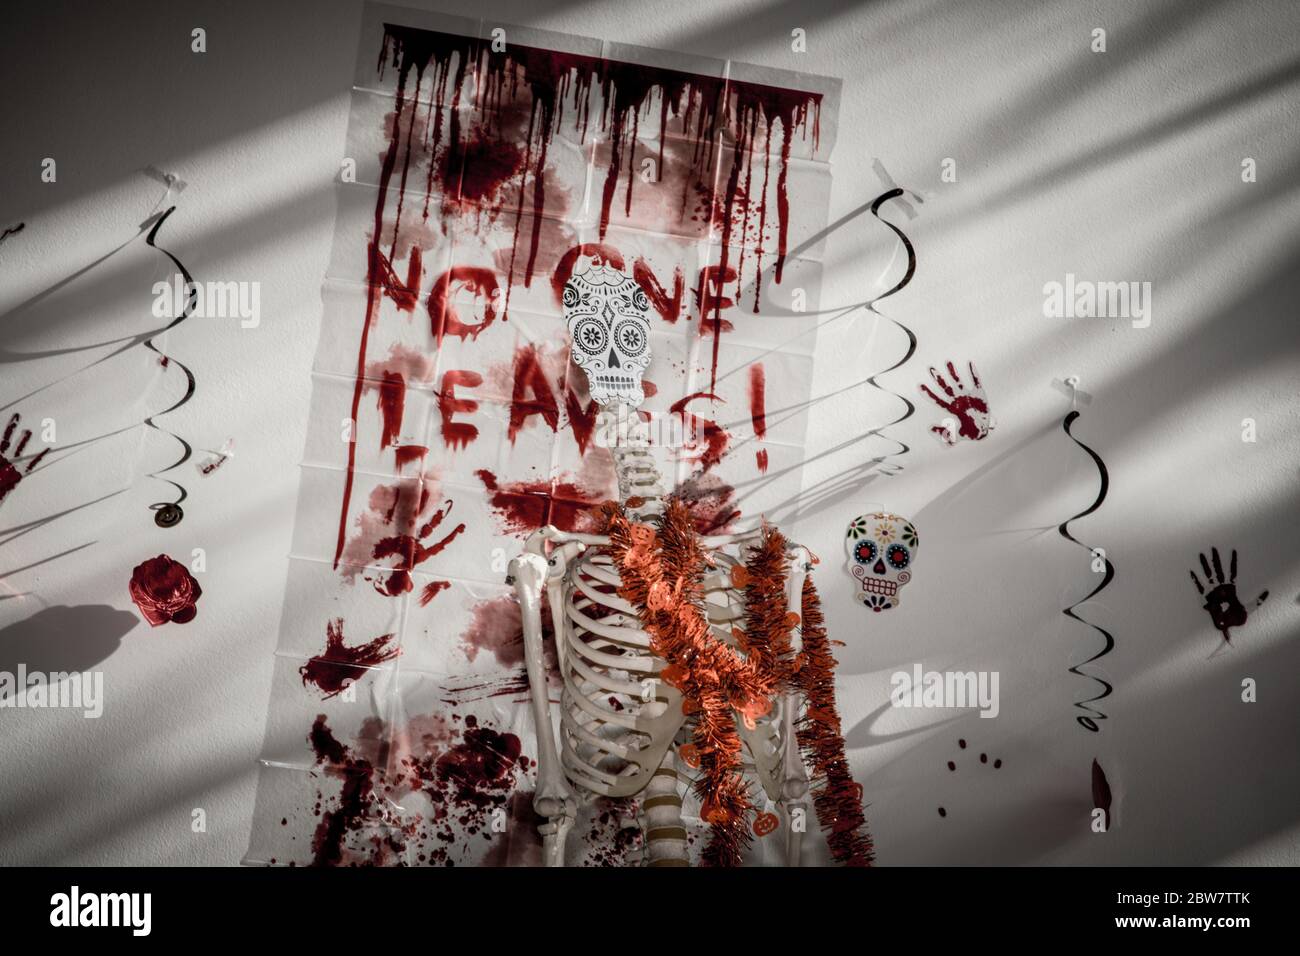 Skelett vor Plakat mit Blut - Gruselig Foto de stock